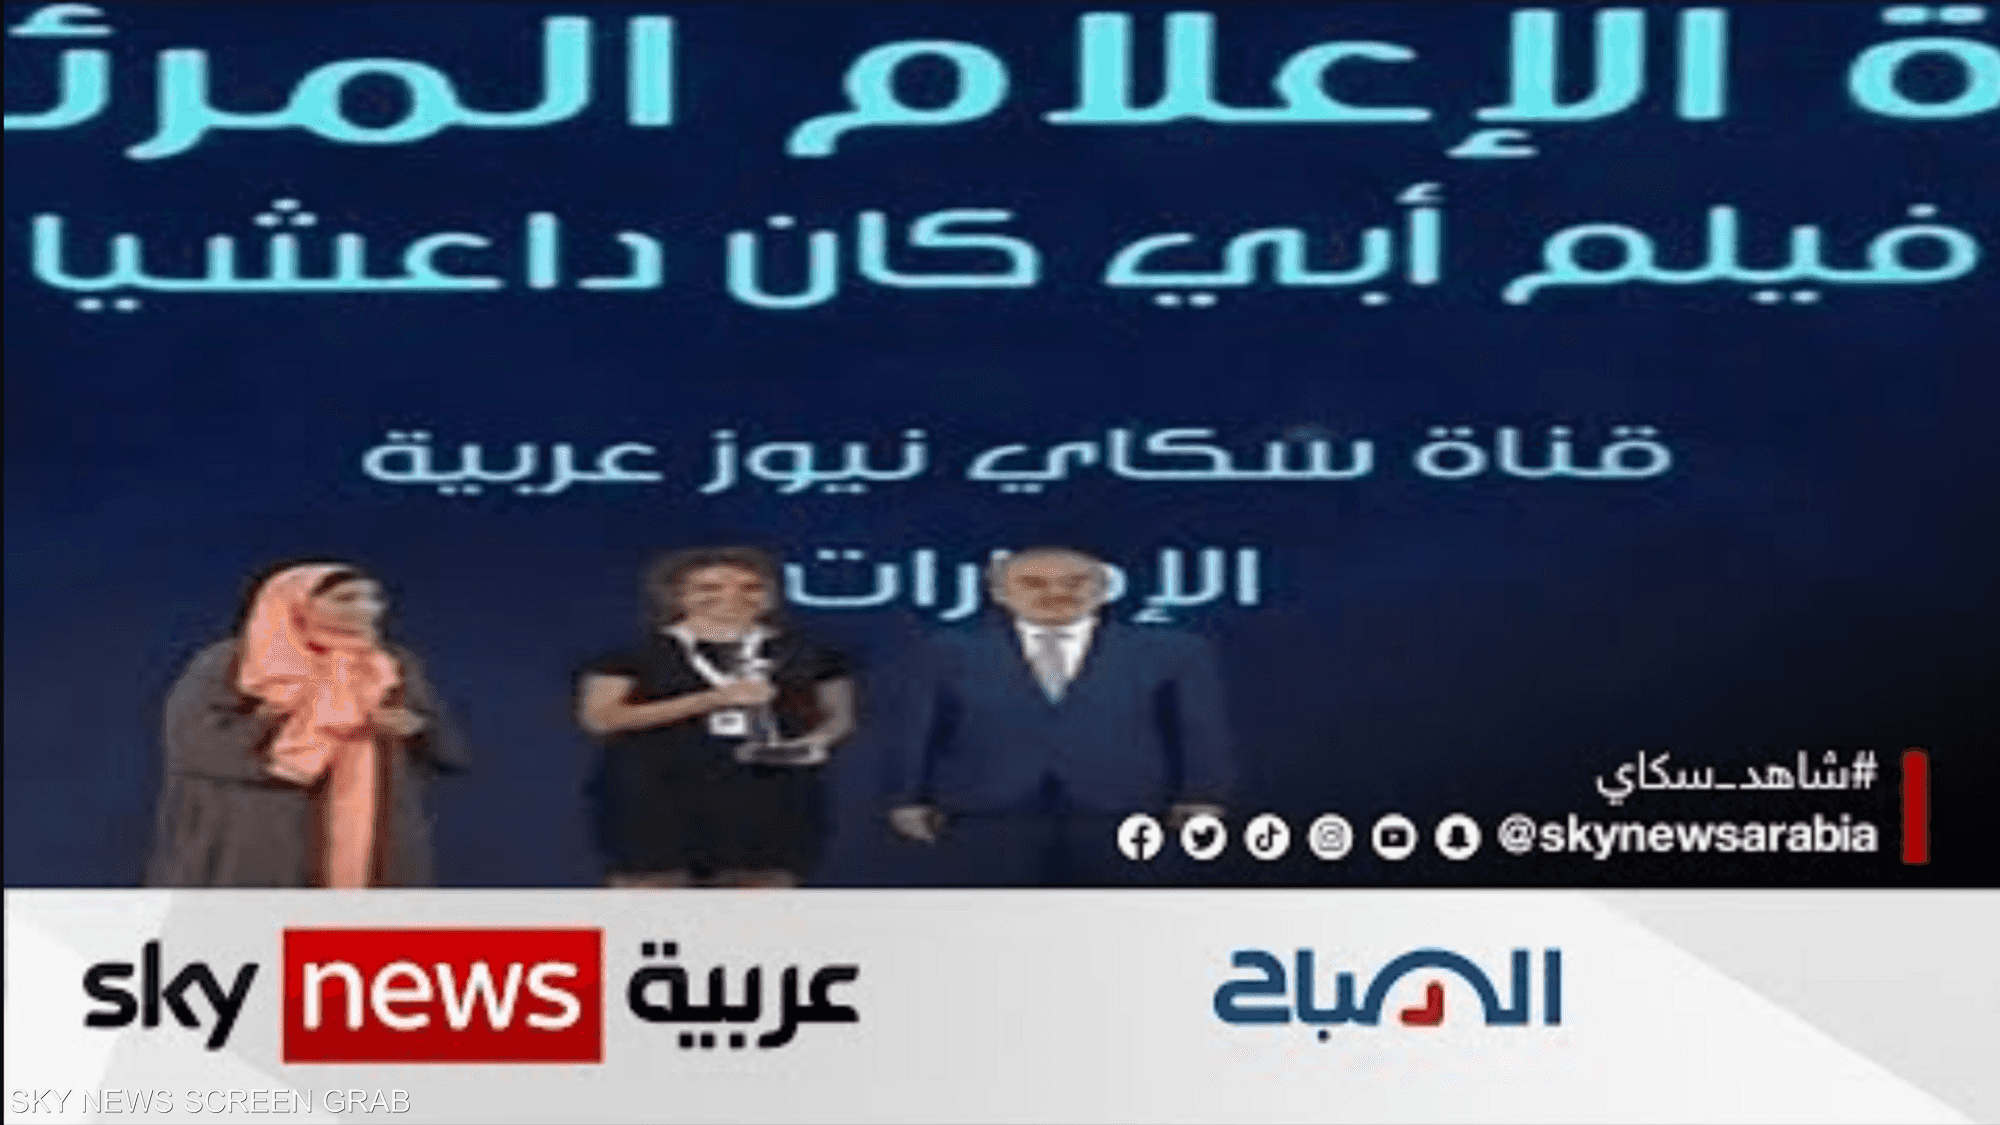 سكاي نيوز عربية تفوز بجائزة أفضل وثائقي بمنتدى الإعلام